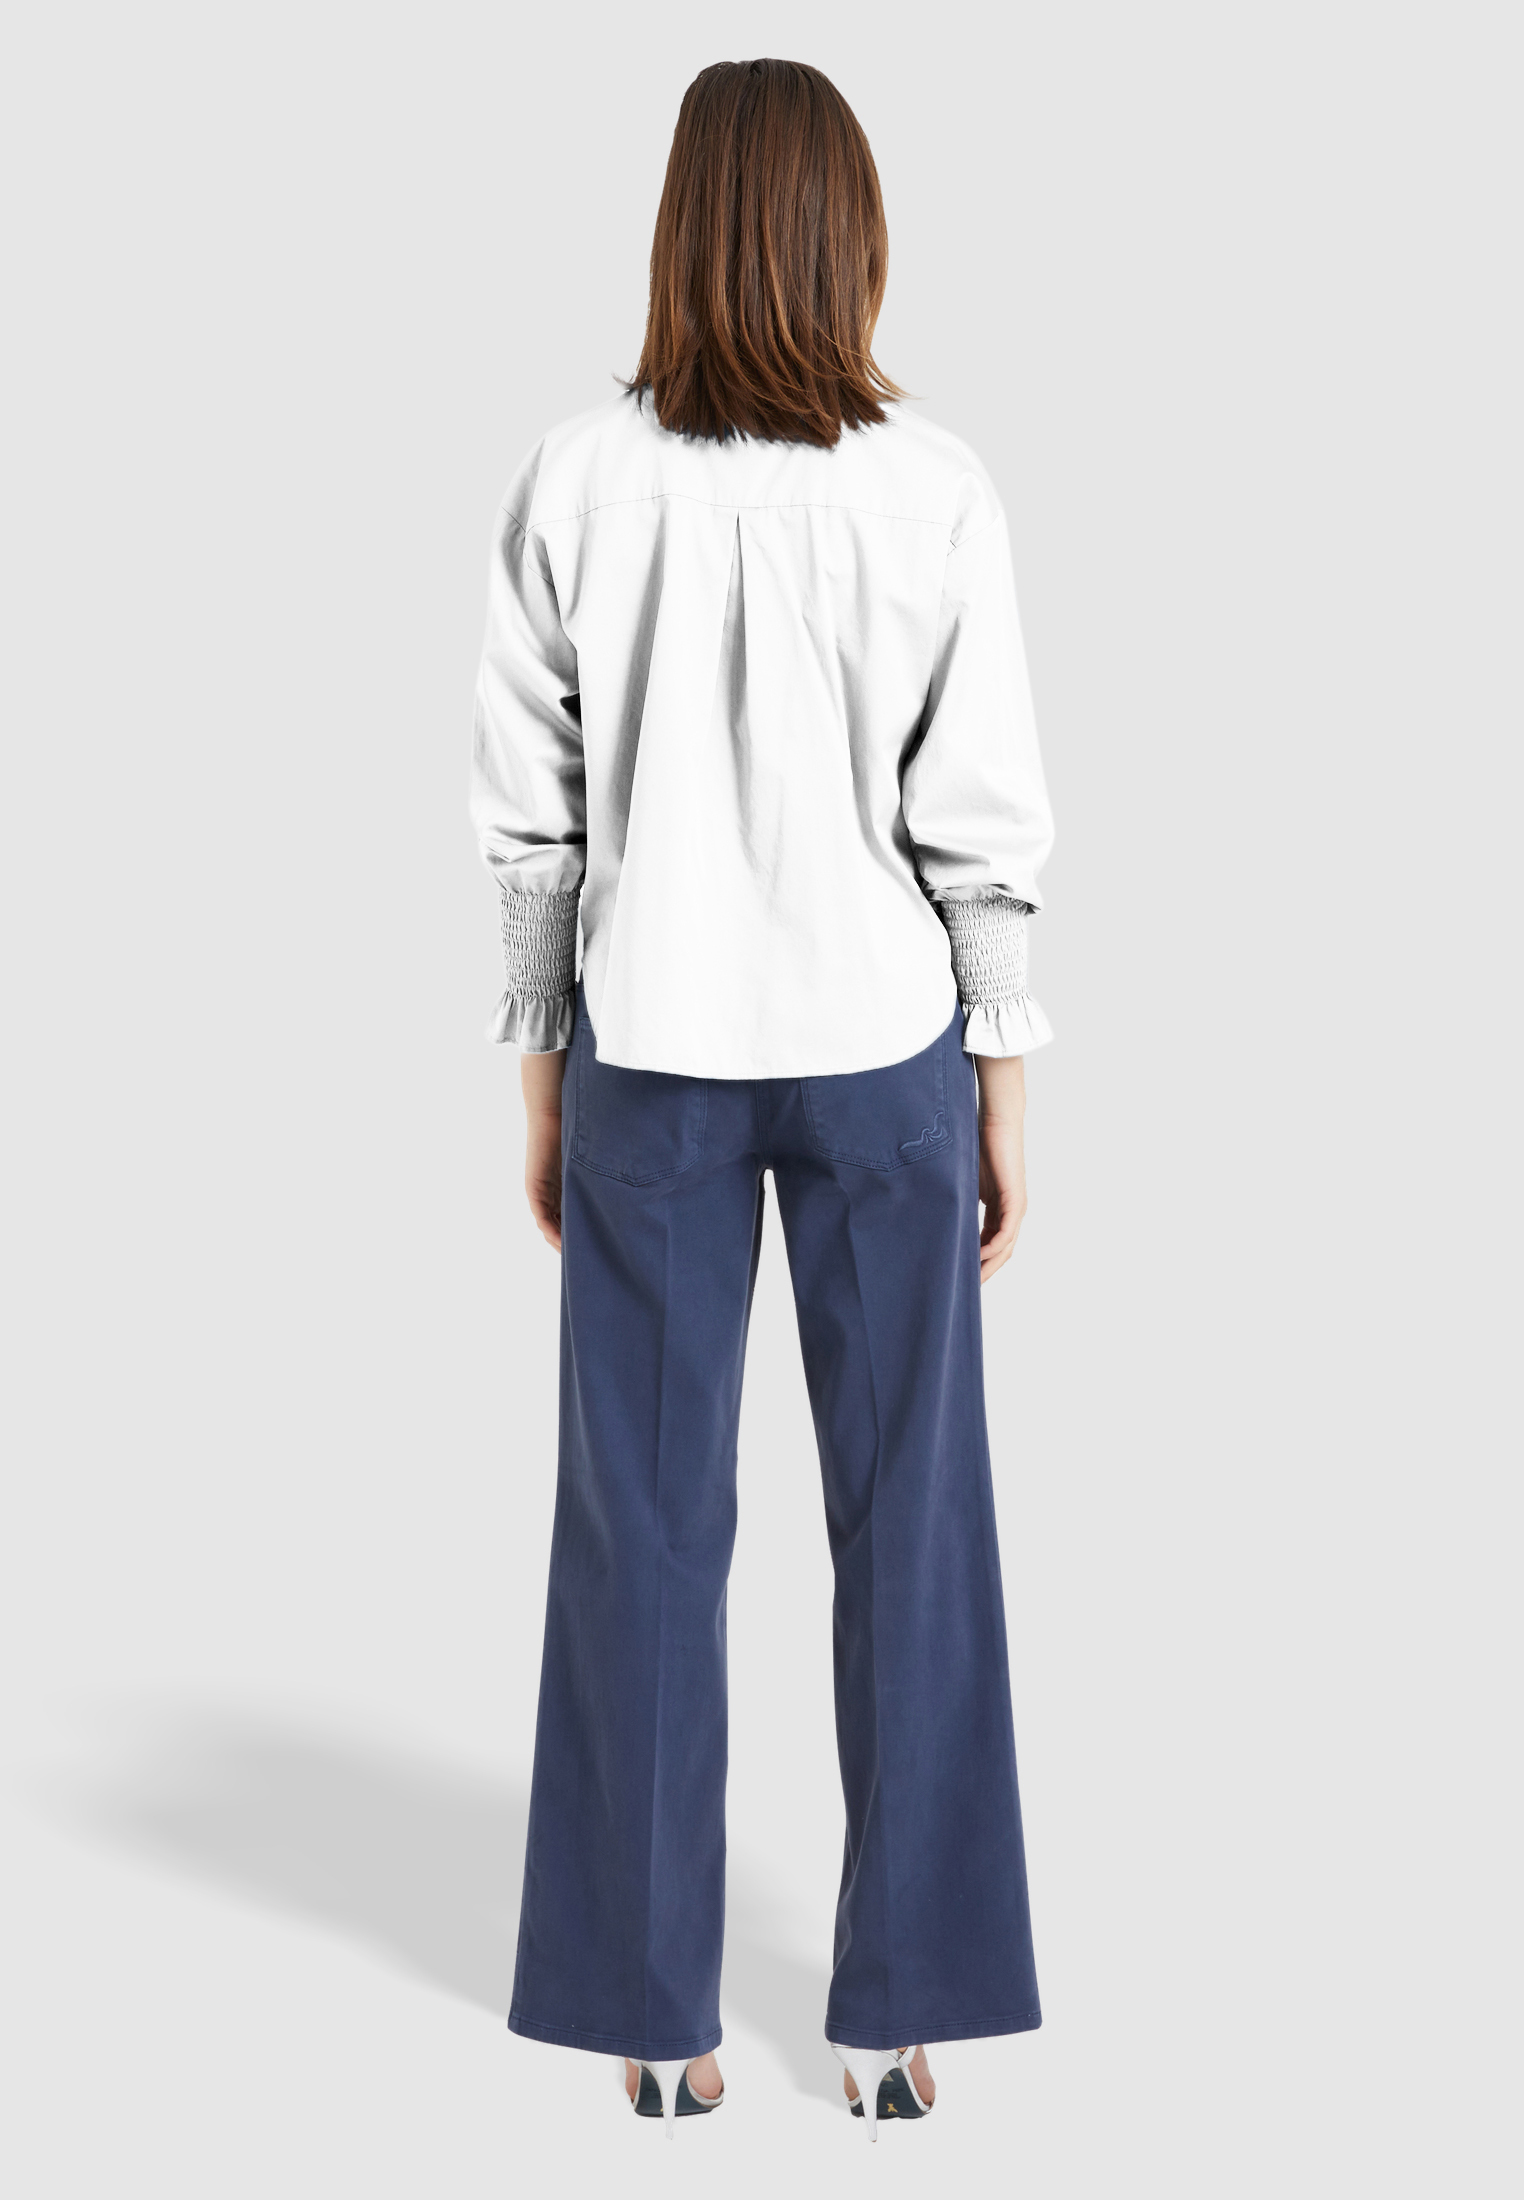 Artikel klicken und genauer betrachten! - Oversized-Hemd mit Hemdkragen und Smokdetails aus Baumwollsatin. Die Bluse hat lange Ärmel, eine durchgehende Blusenknopfleiste und Rüschendetails. | im Online Shop kaufen